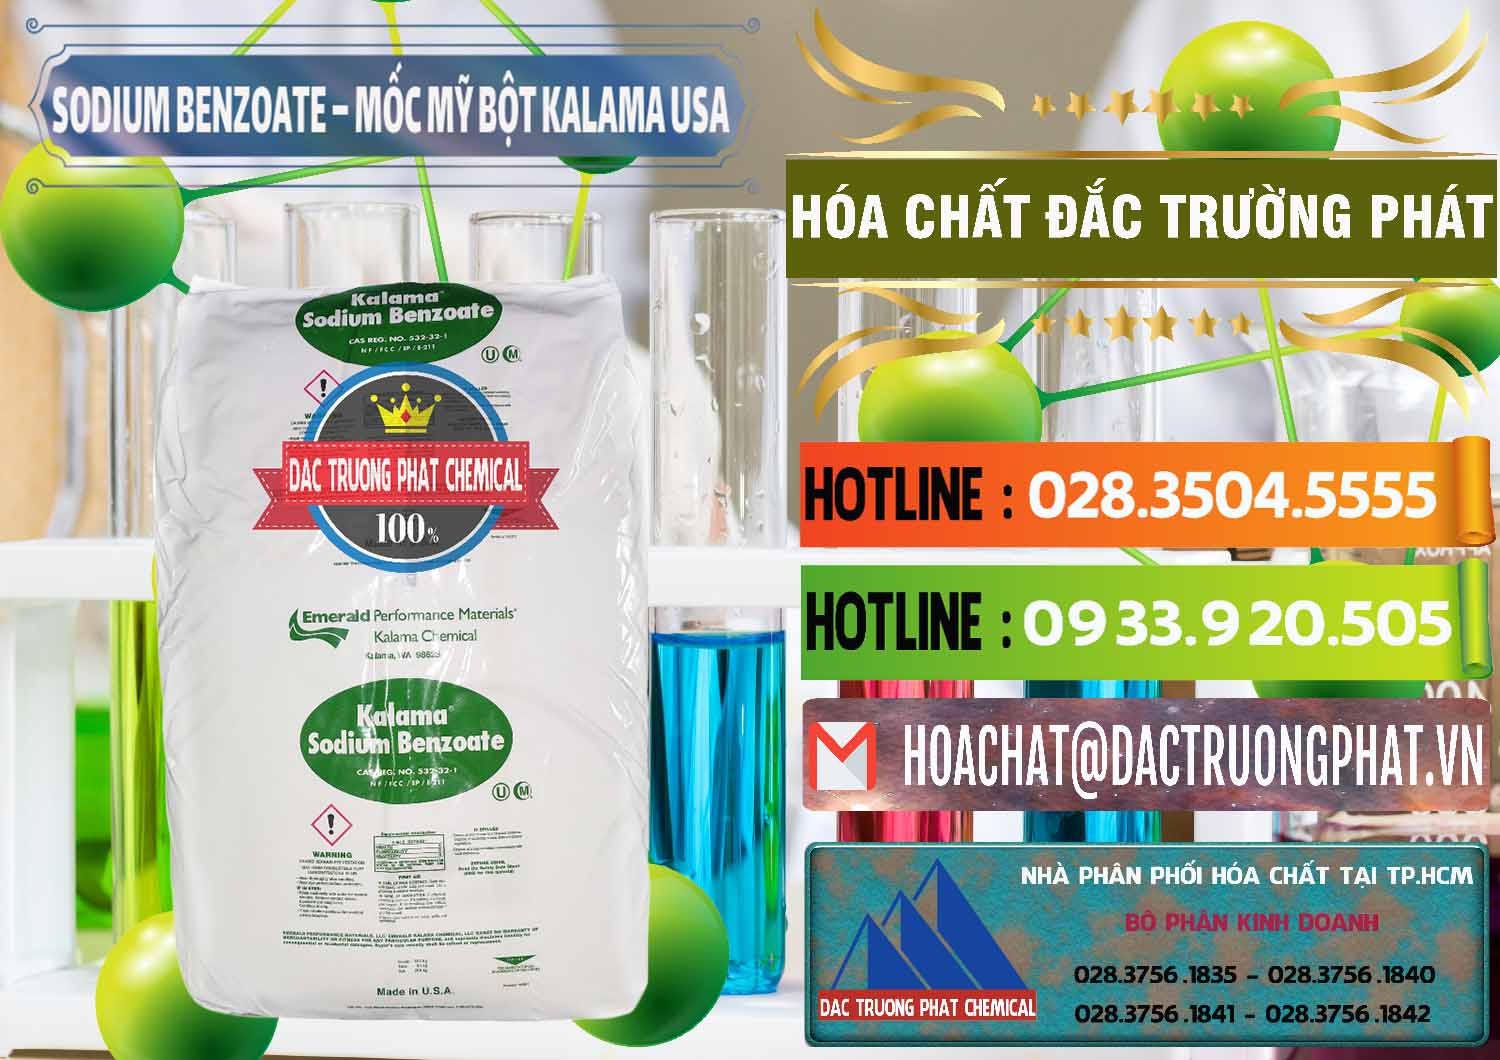 Công ty bán - phân phối Sodium Benzoate - Mốc Bột Kalama Food Grade Mỹ Usa - 0136 - Nơi chuyên bán _ cung cấp hóa chất tại TP.HCM - cungcaphoachat.com.vn